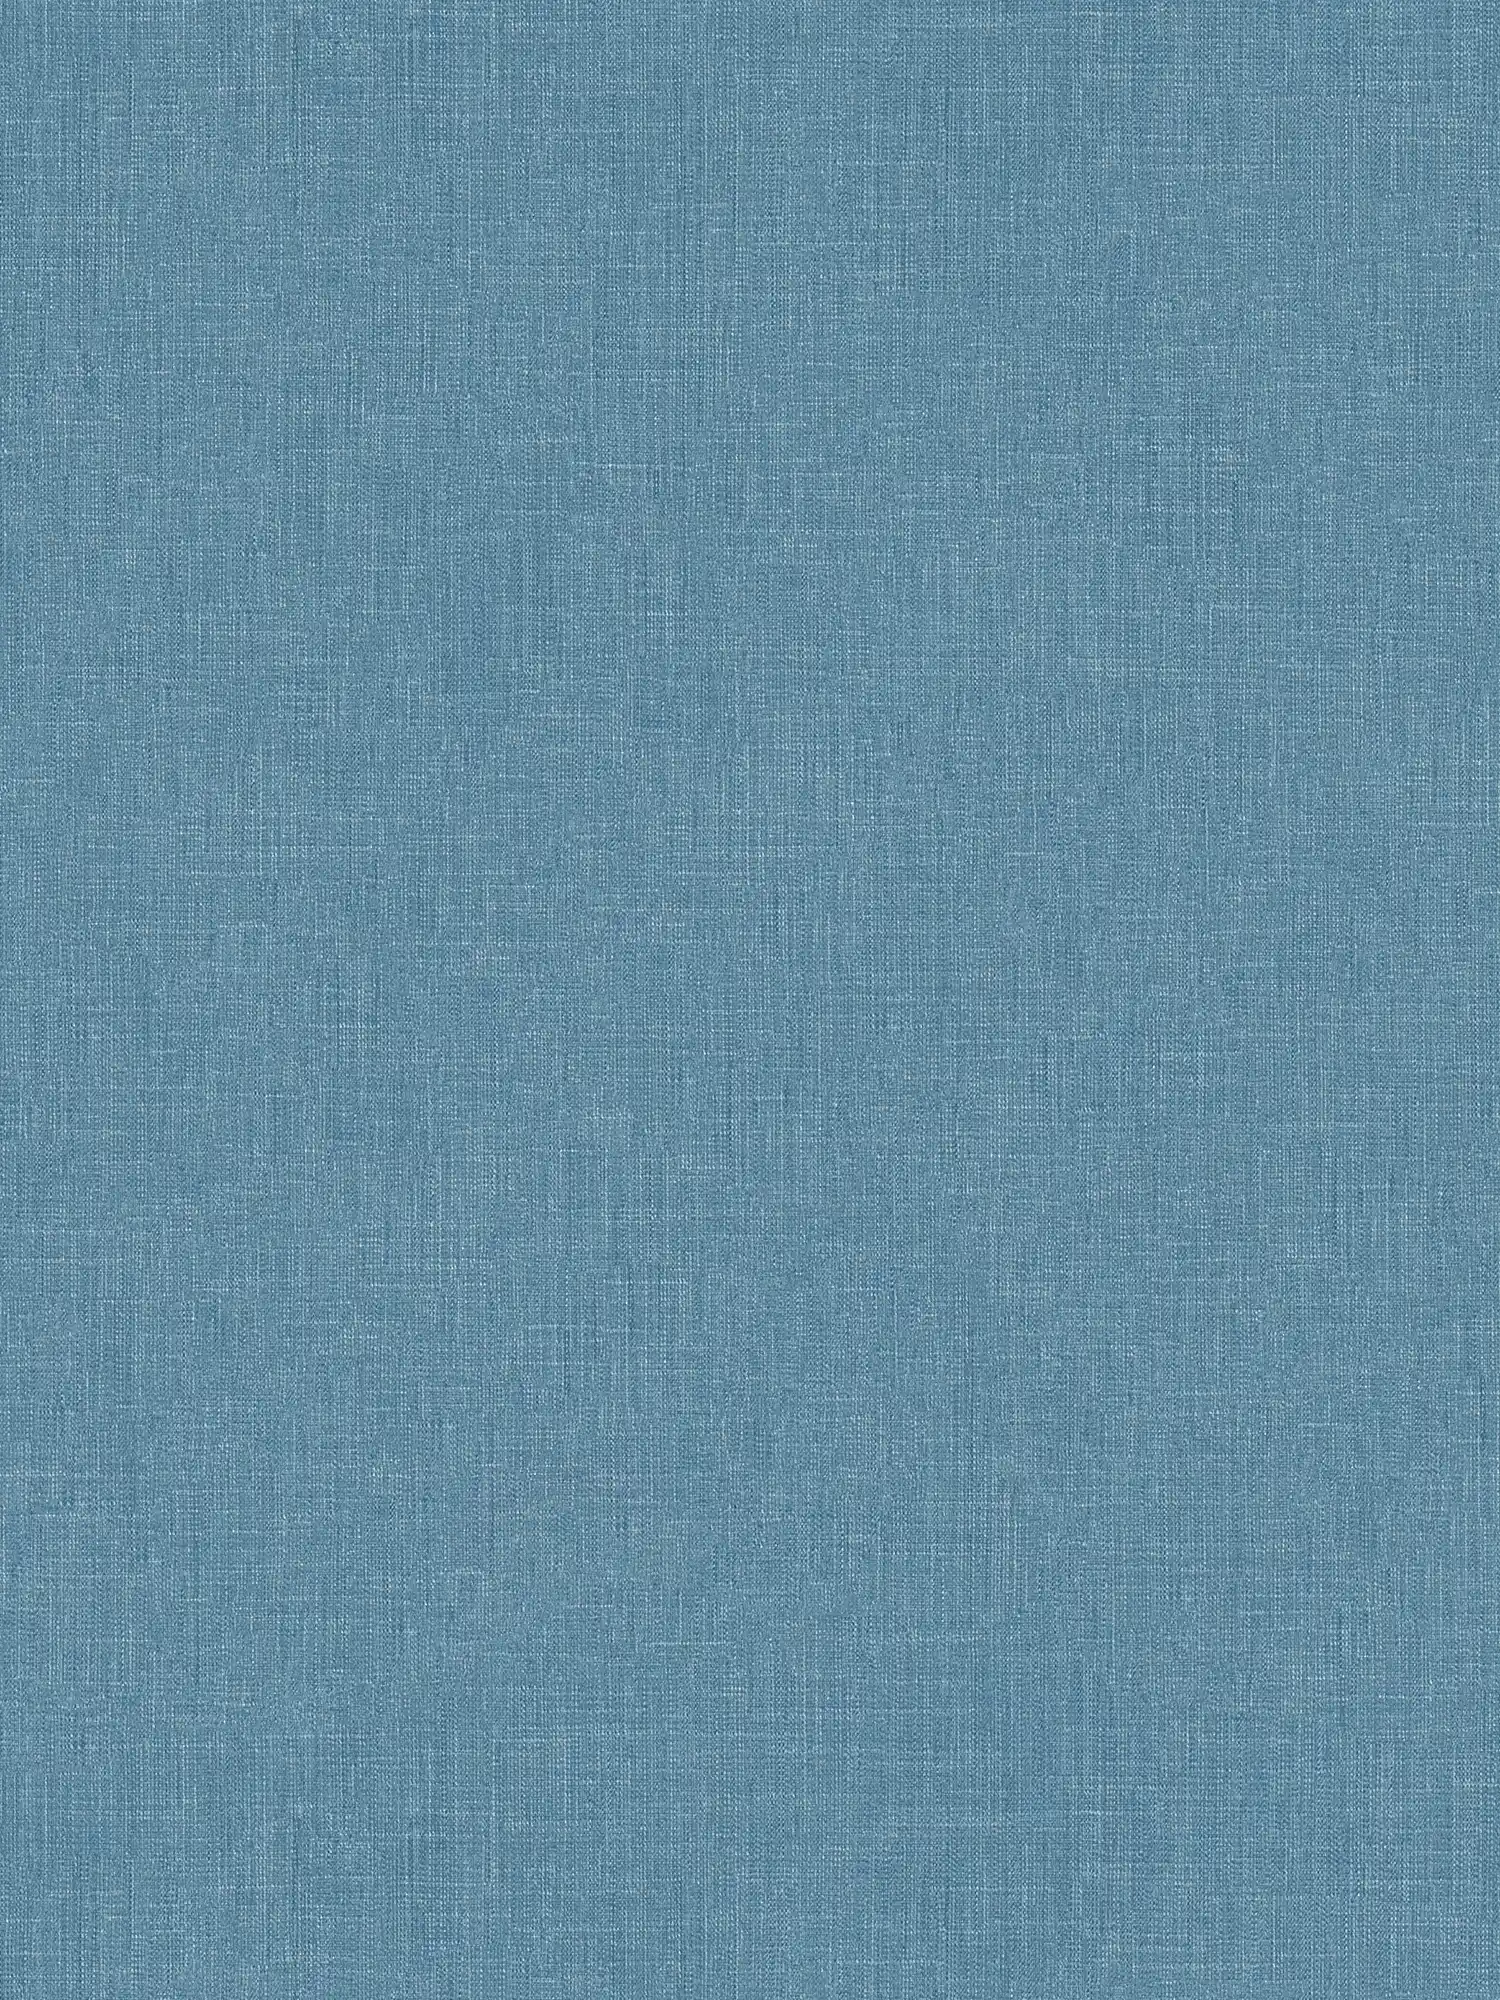 Papier peint bleu pétrole Design textile chiné au look scandi
